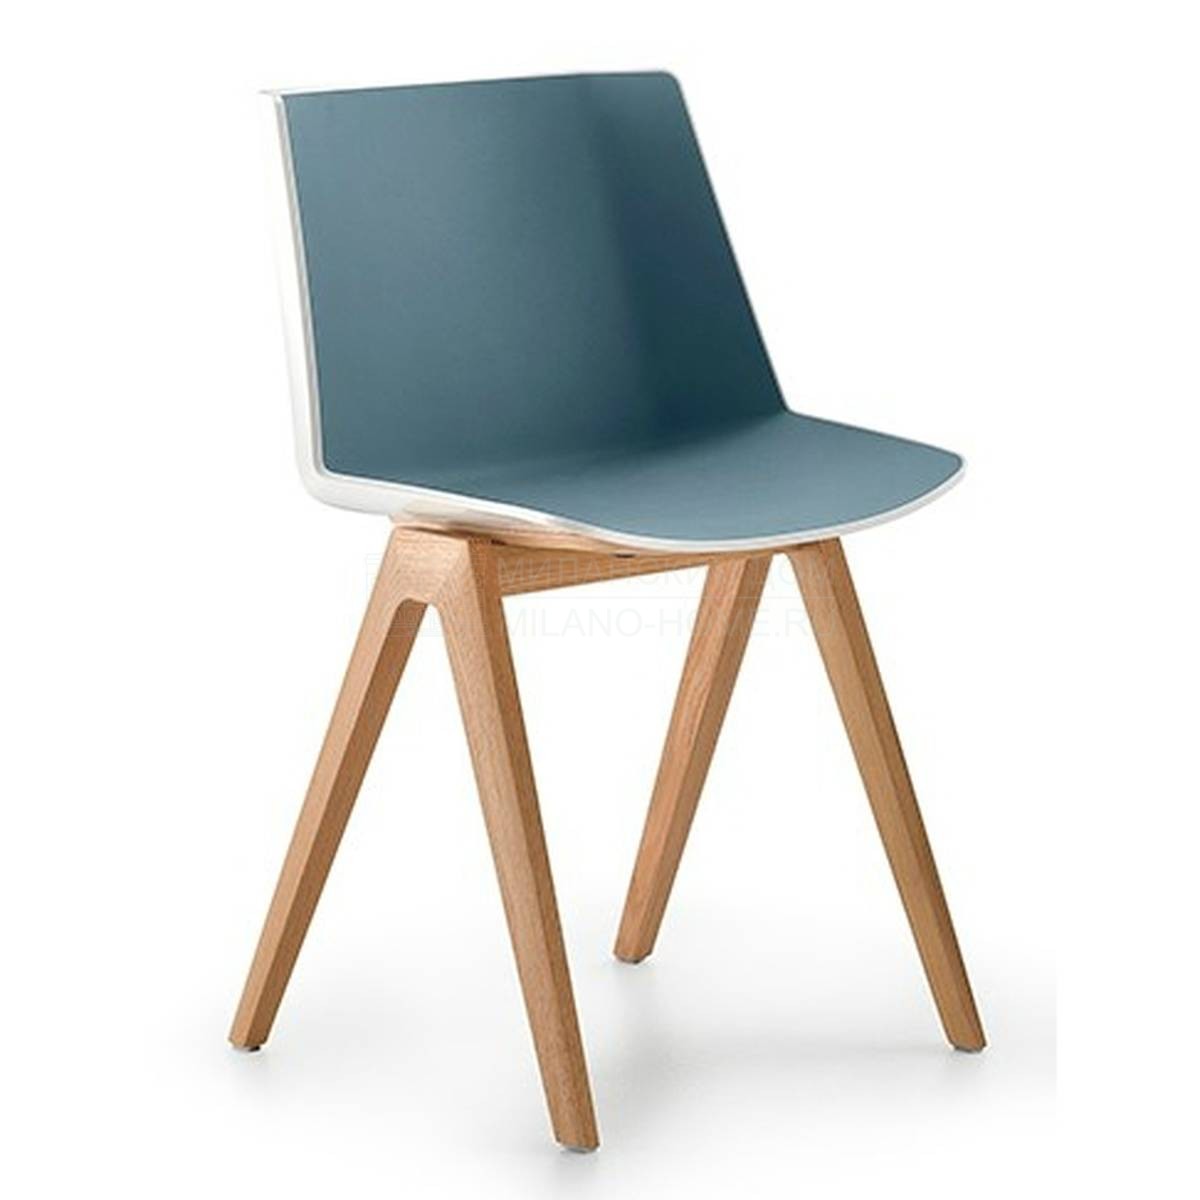 Металлический / Пластиковый стул Aiku из Италии фабрики MDF ITALIA